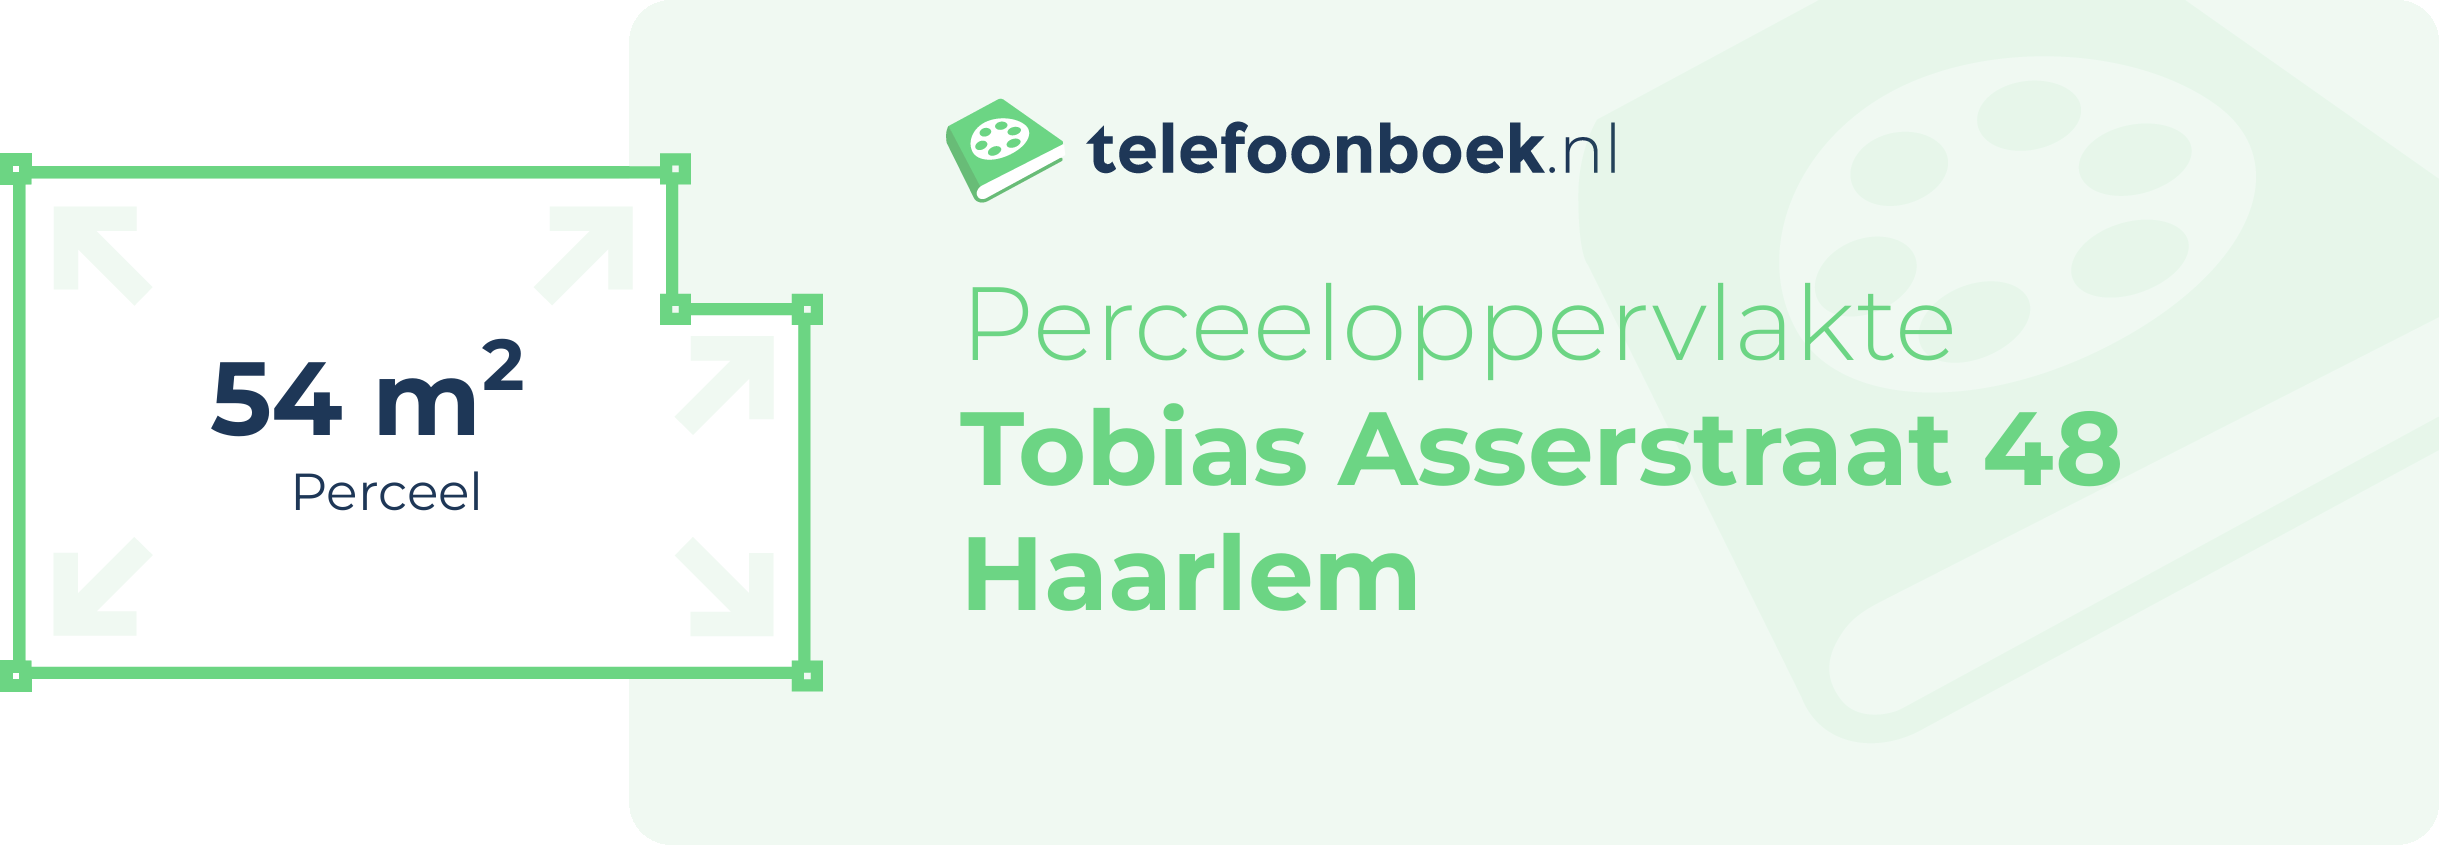 Perceeloppervlakte Tobias Asserstraat 48 Haarlem